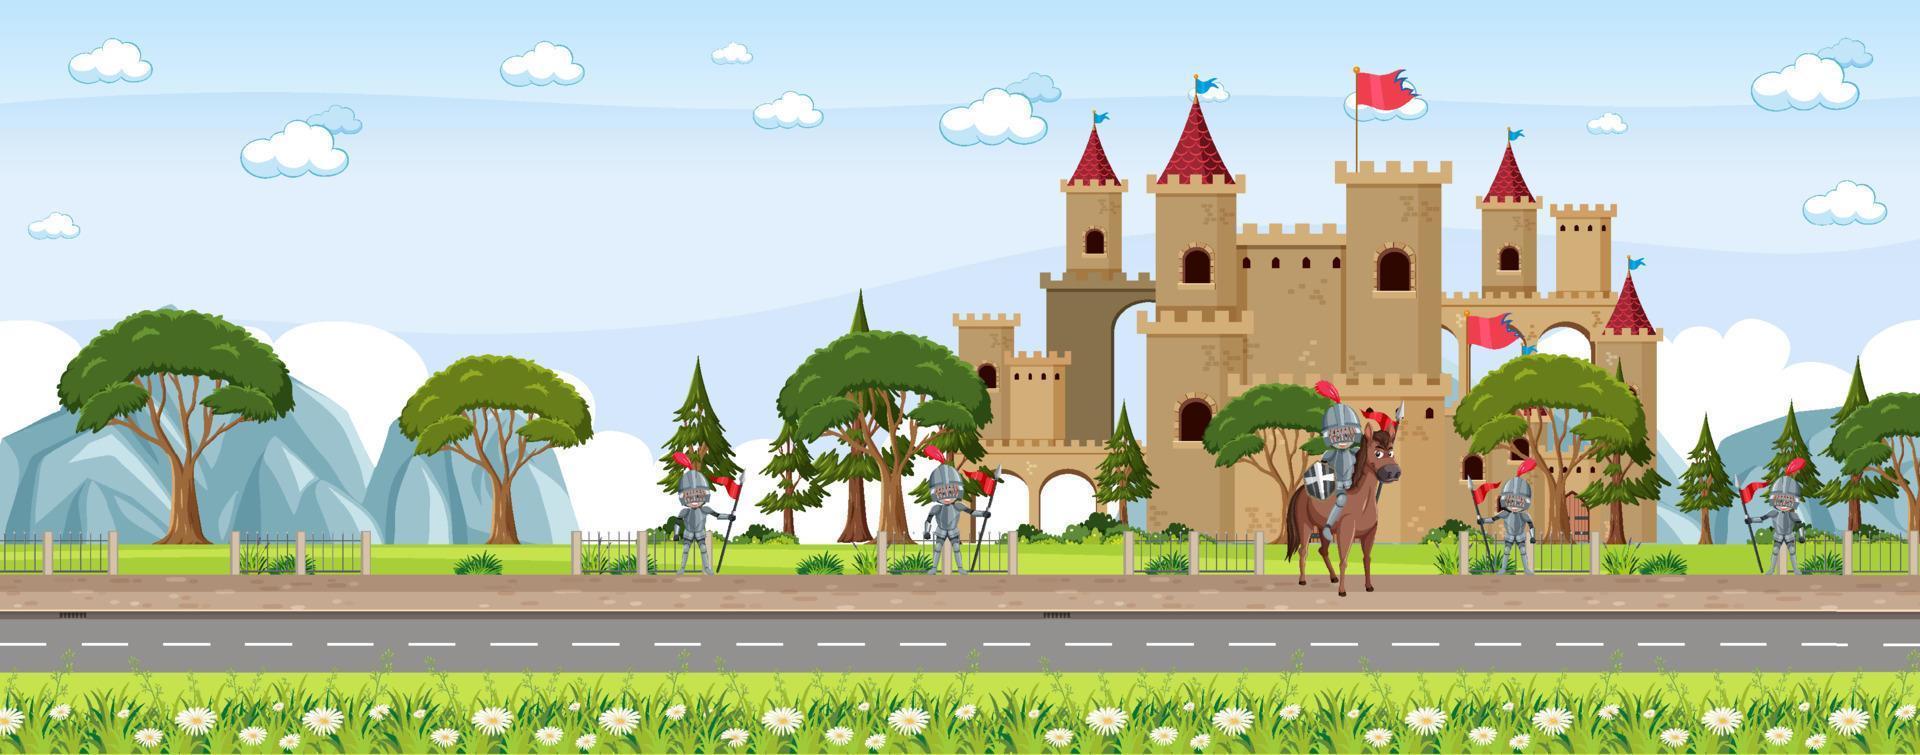 escena de la ciudad medieval con aldeanos y castillo vector